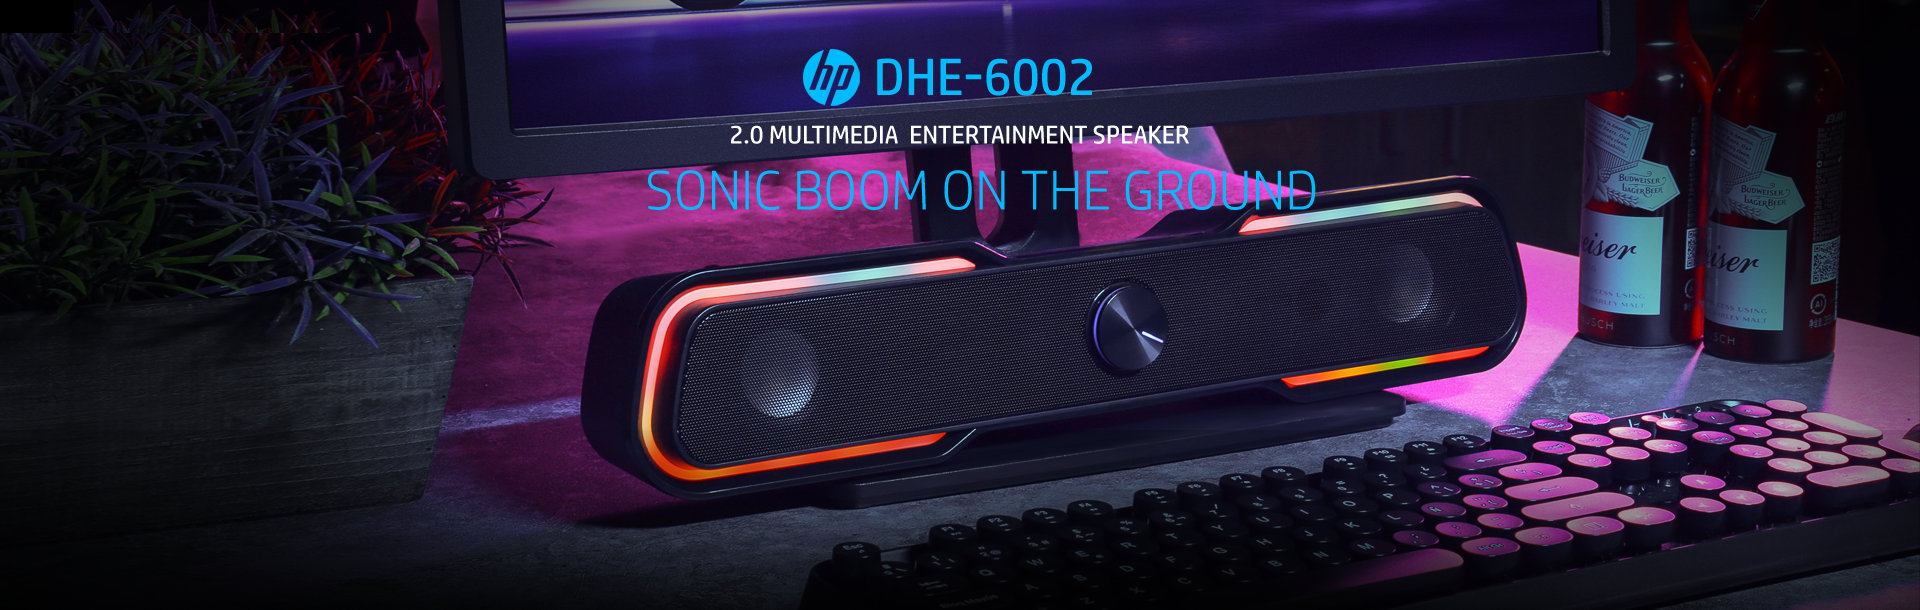 HP DHE-6002